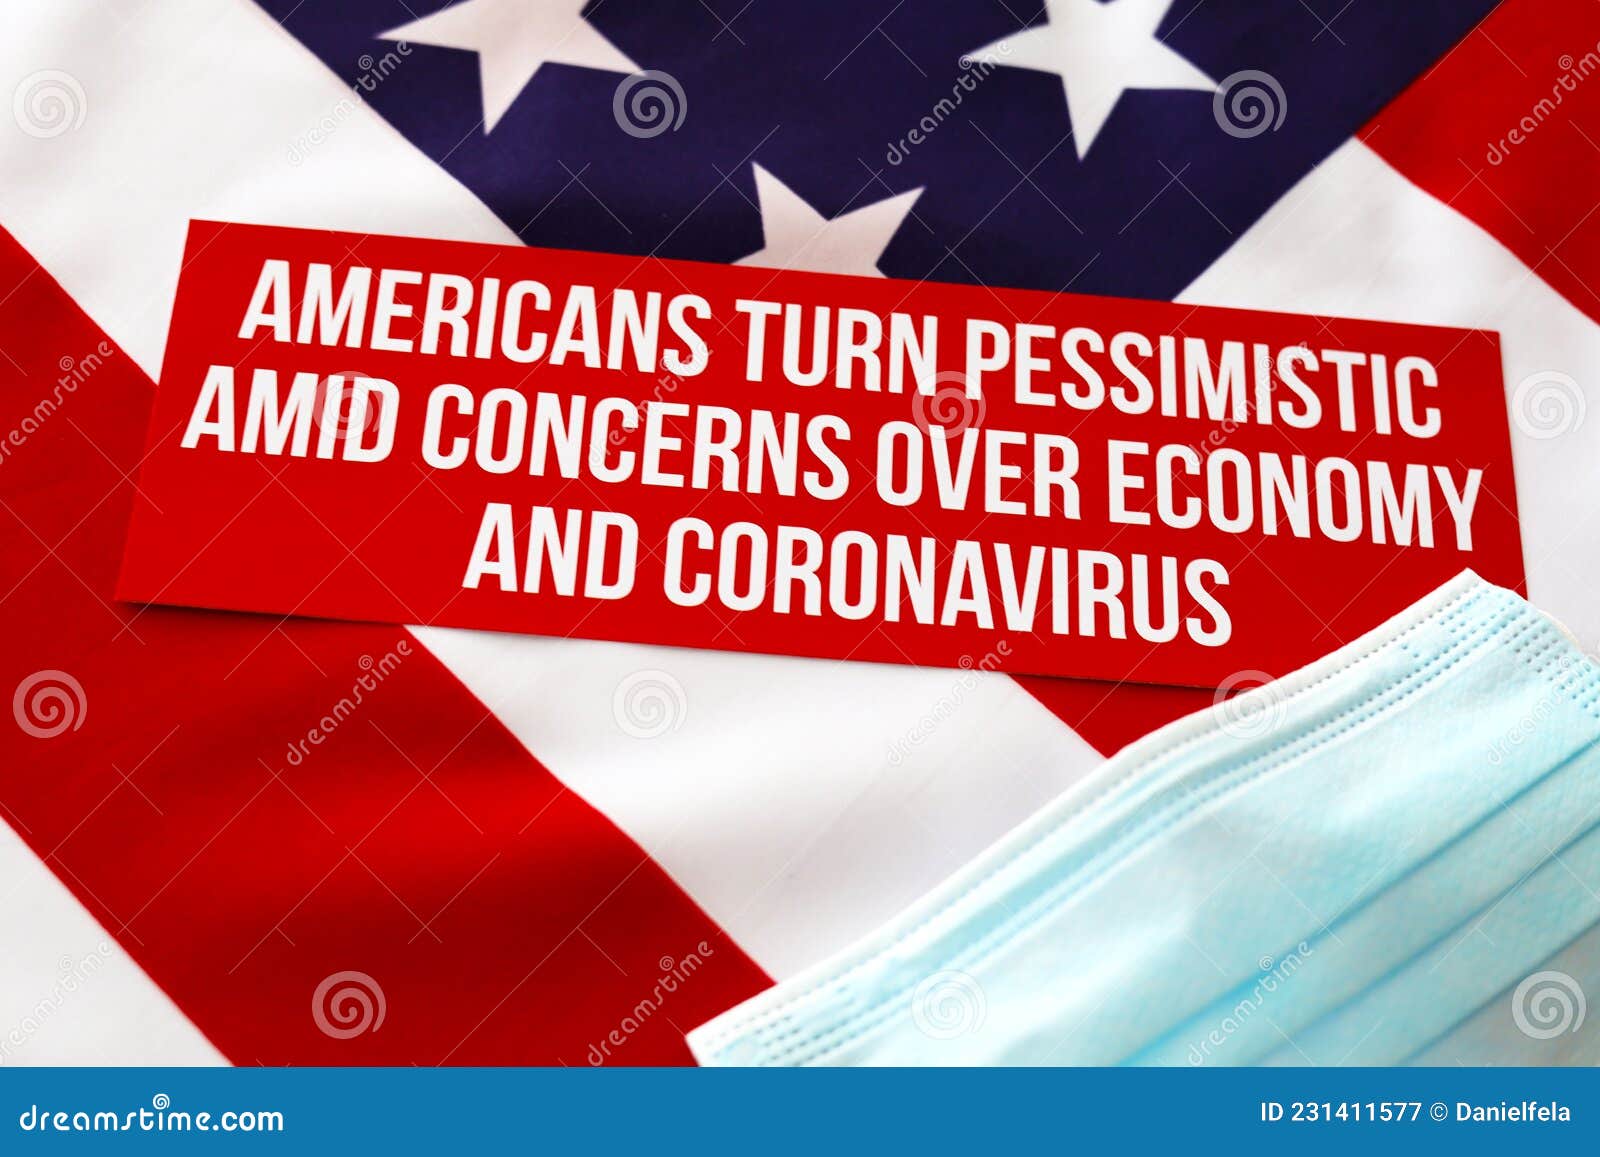 Americans Economy and Coronavirus Sign, Face Mask Stock Image - Image ...